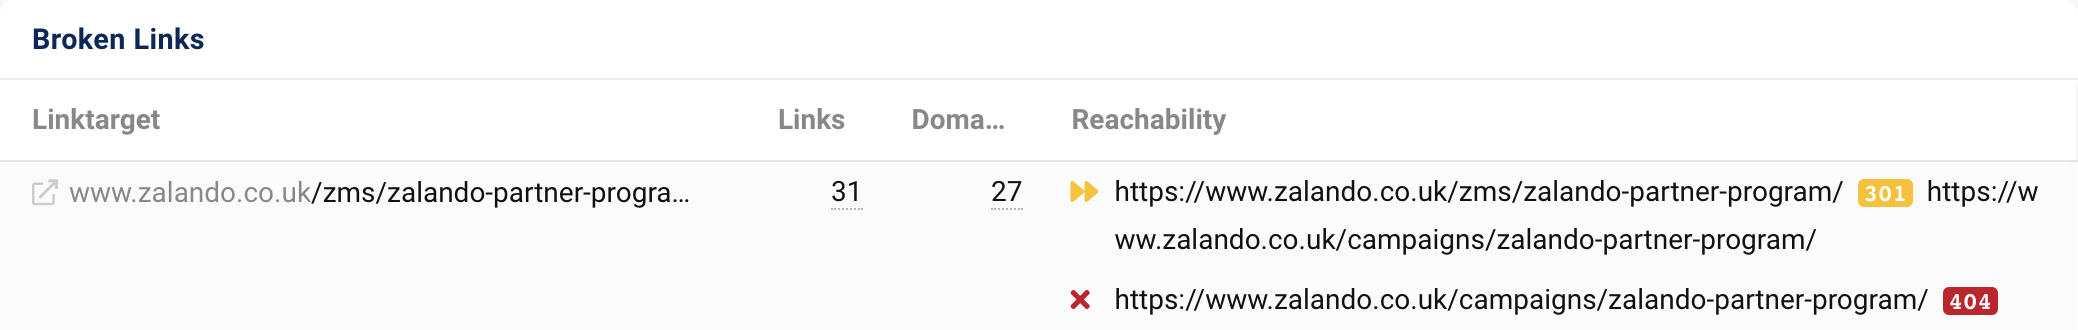 リンク ターゲット zalando.co.uk/zms/zalando-partner-program/ は、27 のドメインから 31 のリンクを取得します。 301 リダイレクトの後、URL は 404 ステータス コードを出力します。